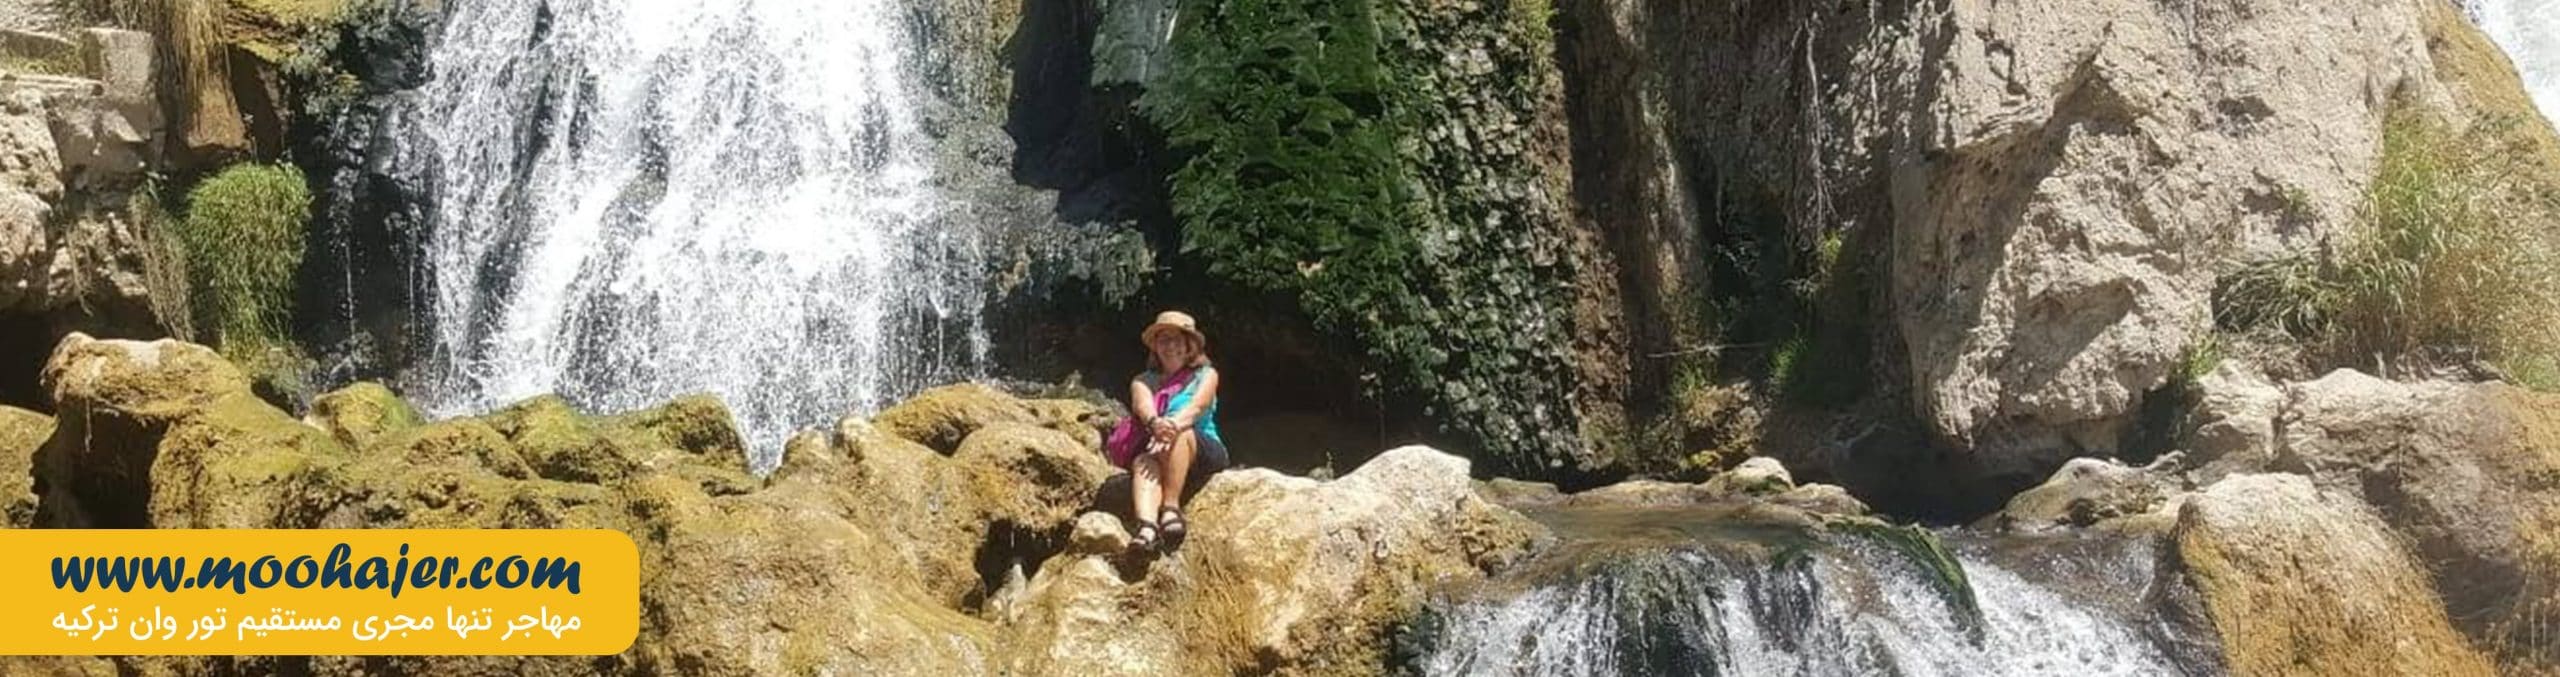 آبشار مرادیه | جاذبه های گردشگری وان | مهاجر سیر ایرانیان